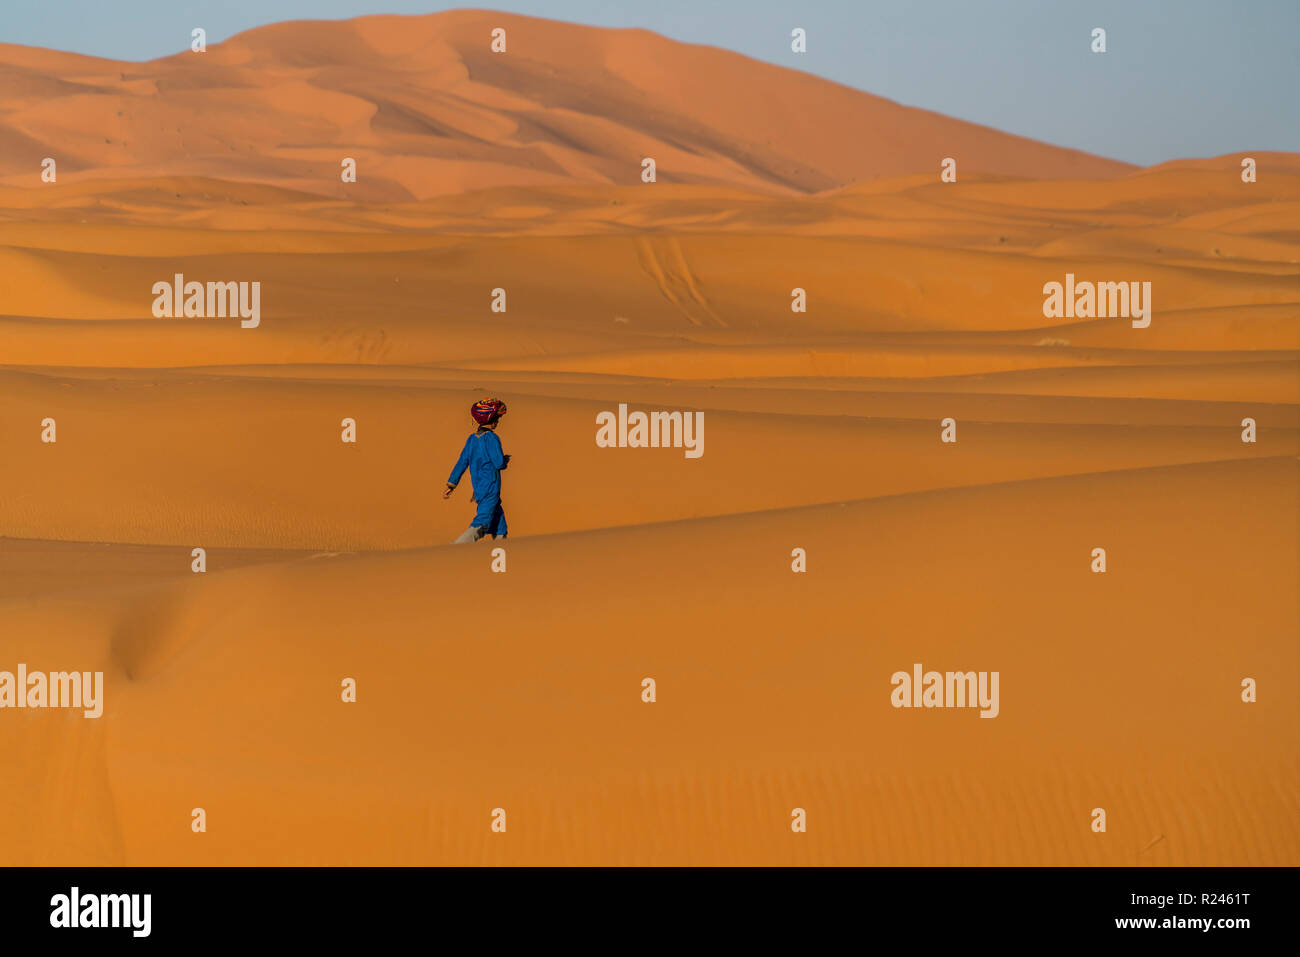 In der Junge Sahara Ancien Wüste bei Merzouga, Maroc | garçon dans le désert du Sahara, près de Merzouga, Royaume du Maroc, l'Afrique Banque D'Images